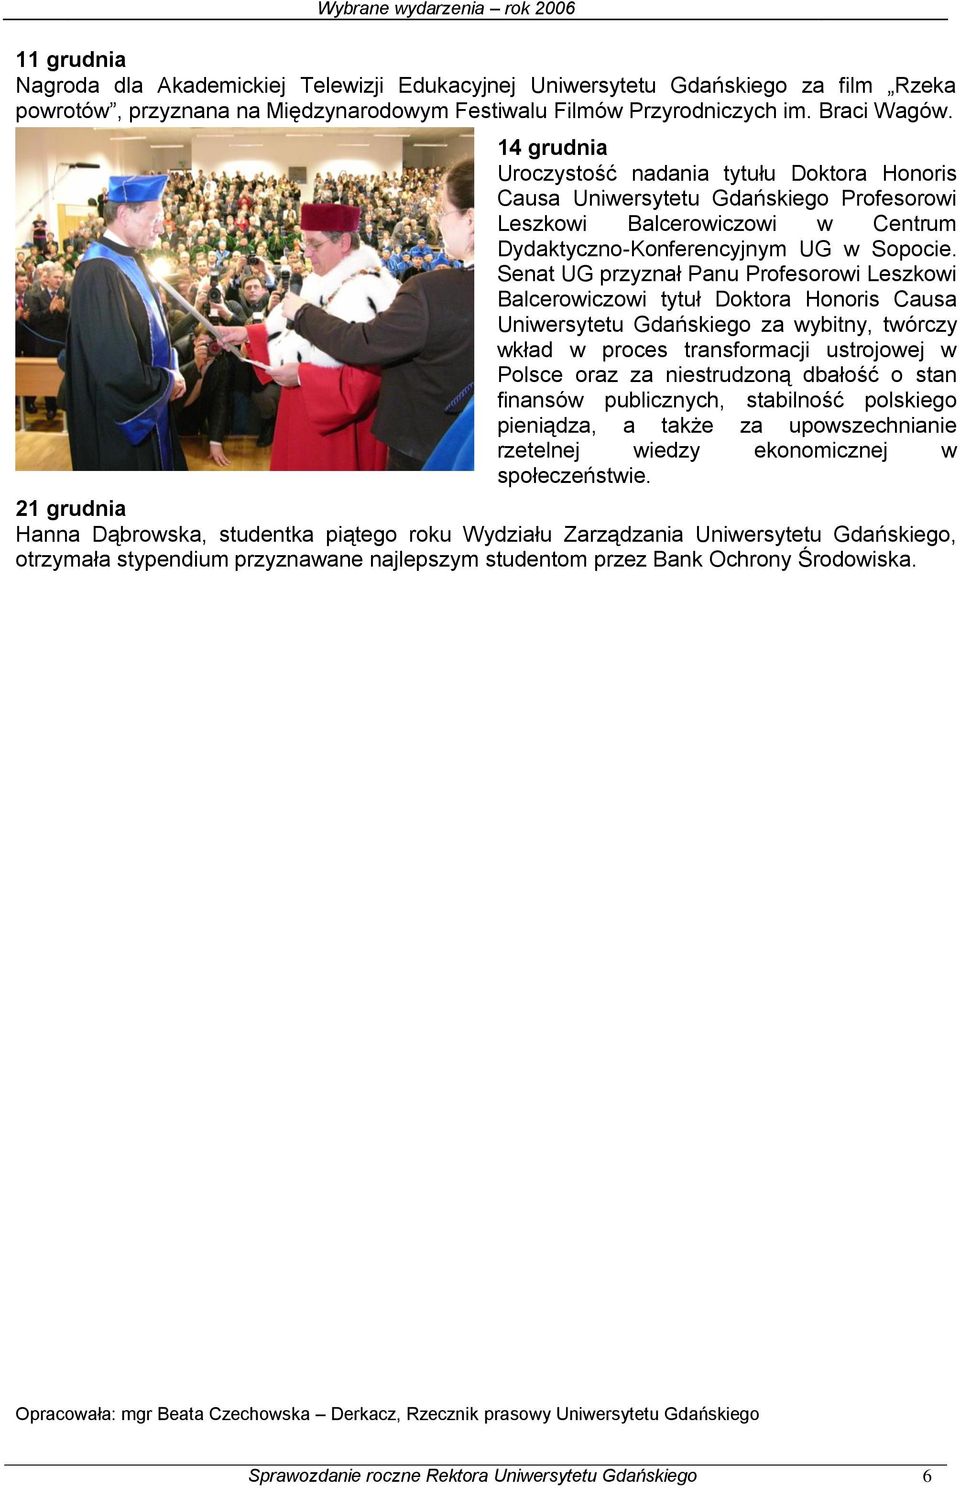 Senat UG przyznał Panu Profesorowi Leszkowi Balcerowiczowi tytuł Doktora Honoris Causa Uniwersytetu Gdańskiego za wybitny, twórczy wkład w proces transformacji ustrojowej w Polsce oraz za